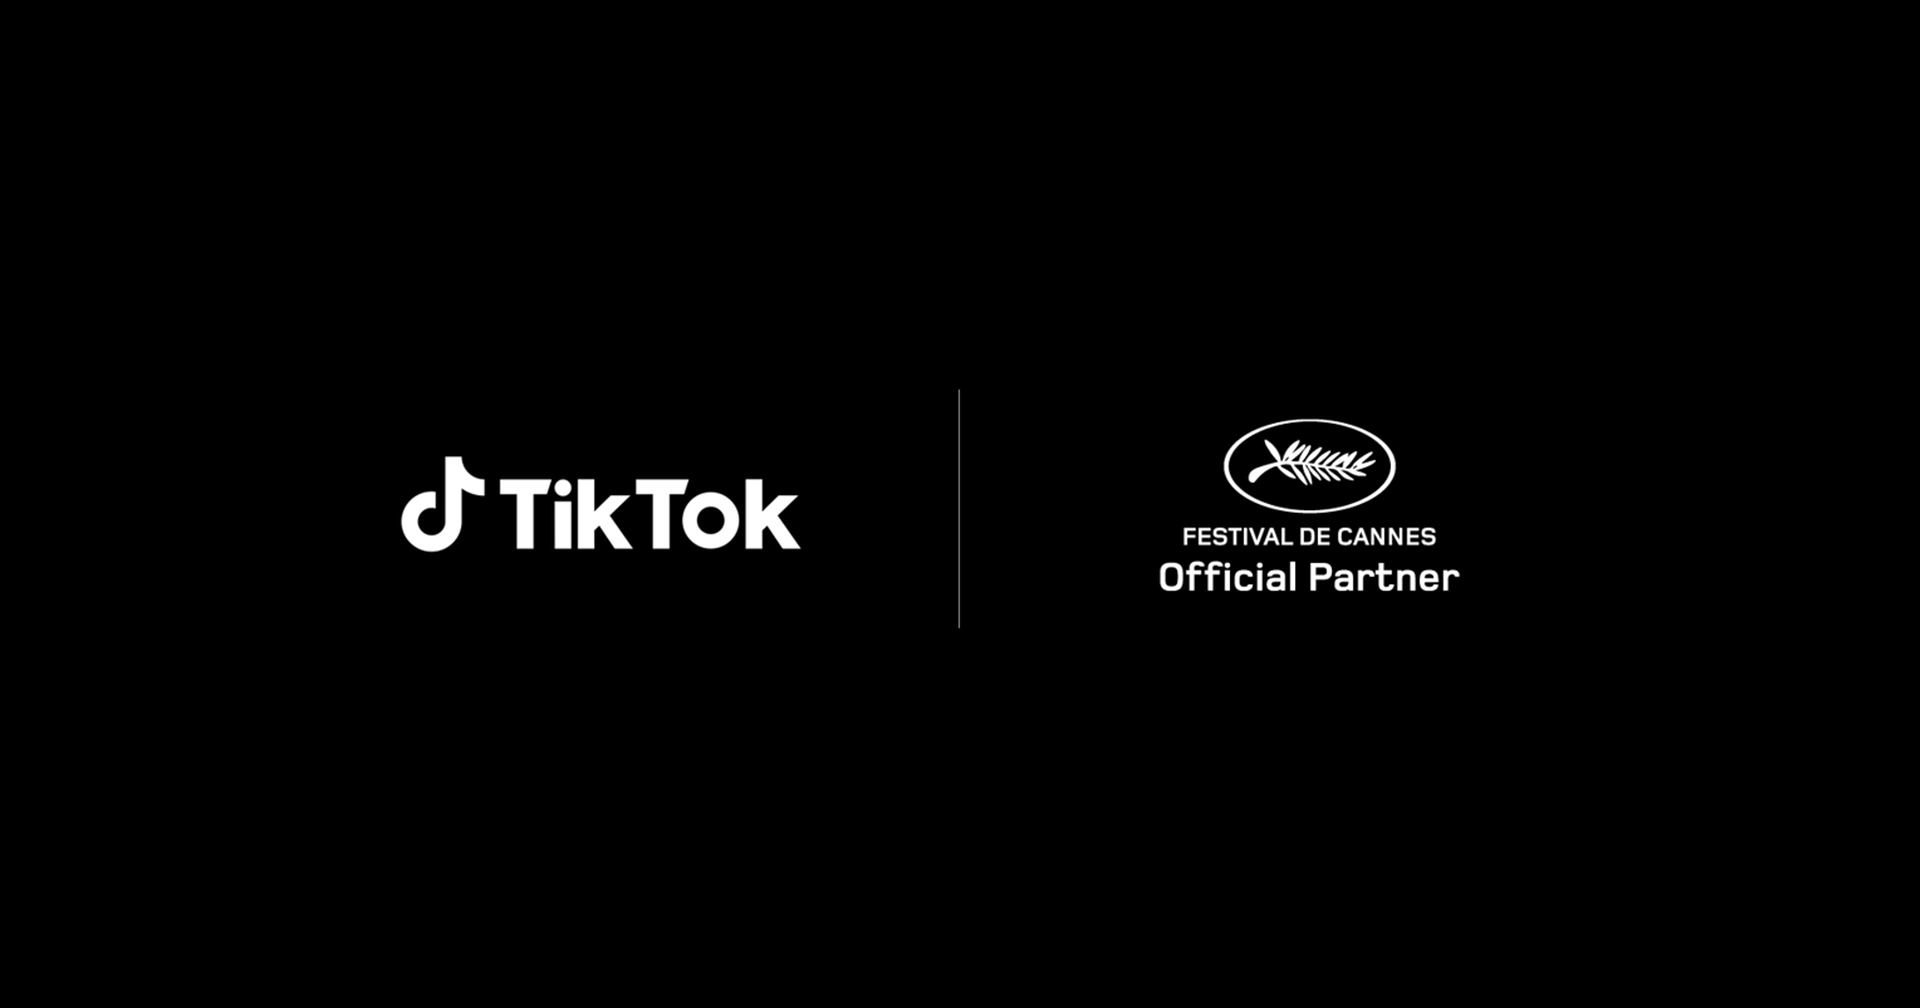 ไม่ใช่แค่เอาไว้เต้น! ‘TikTok’ ประกาศร่วมมือ ‘เทศกาลหนังเมืองคานส์’ จัดแข่งขันประกวดหนังสั้นสุดครีเอทีฟ!